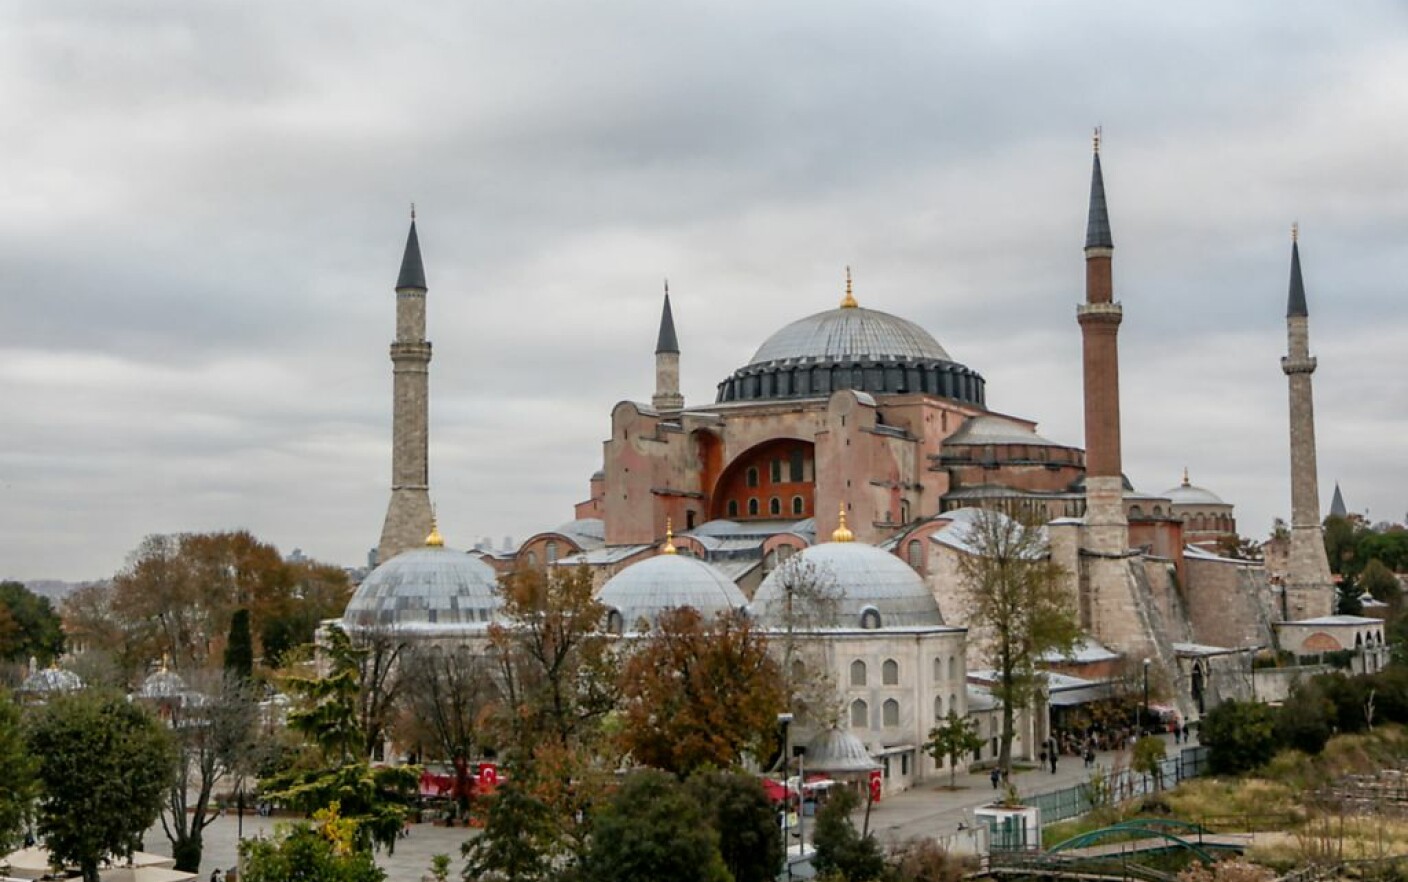 Το σκάνδαλο της Αγίας Σοφίας στην Κωνσταντινούπολη.  Ελλάδα, ΗΠΑ και Ρωσία επικρίνουν την απόφαση του Ερντογάν